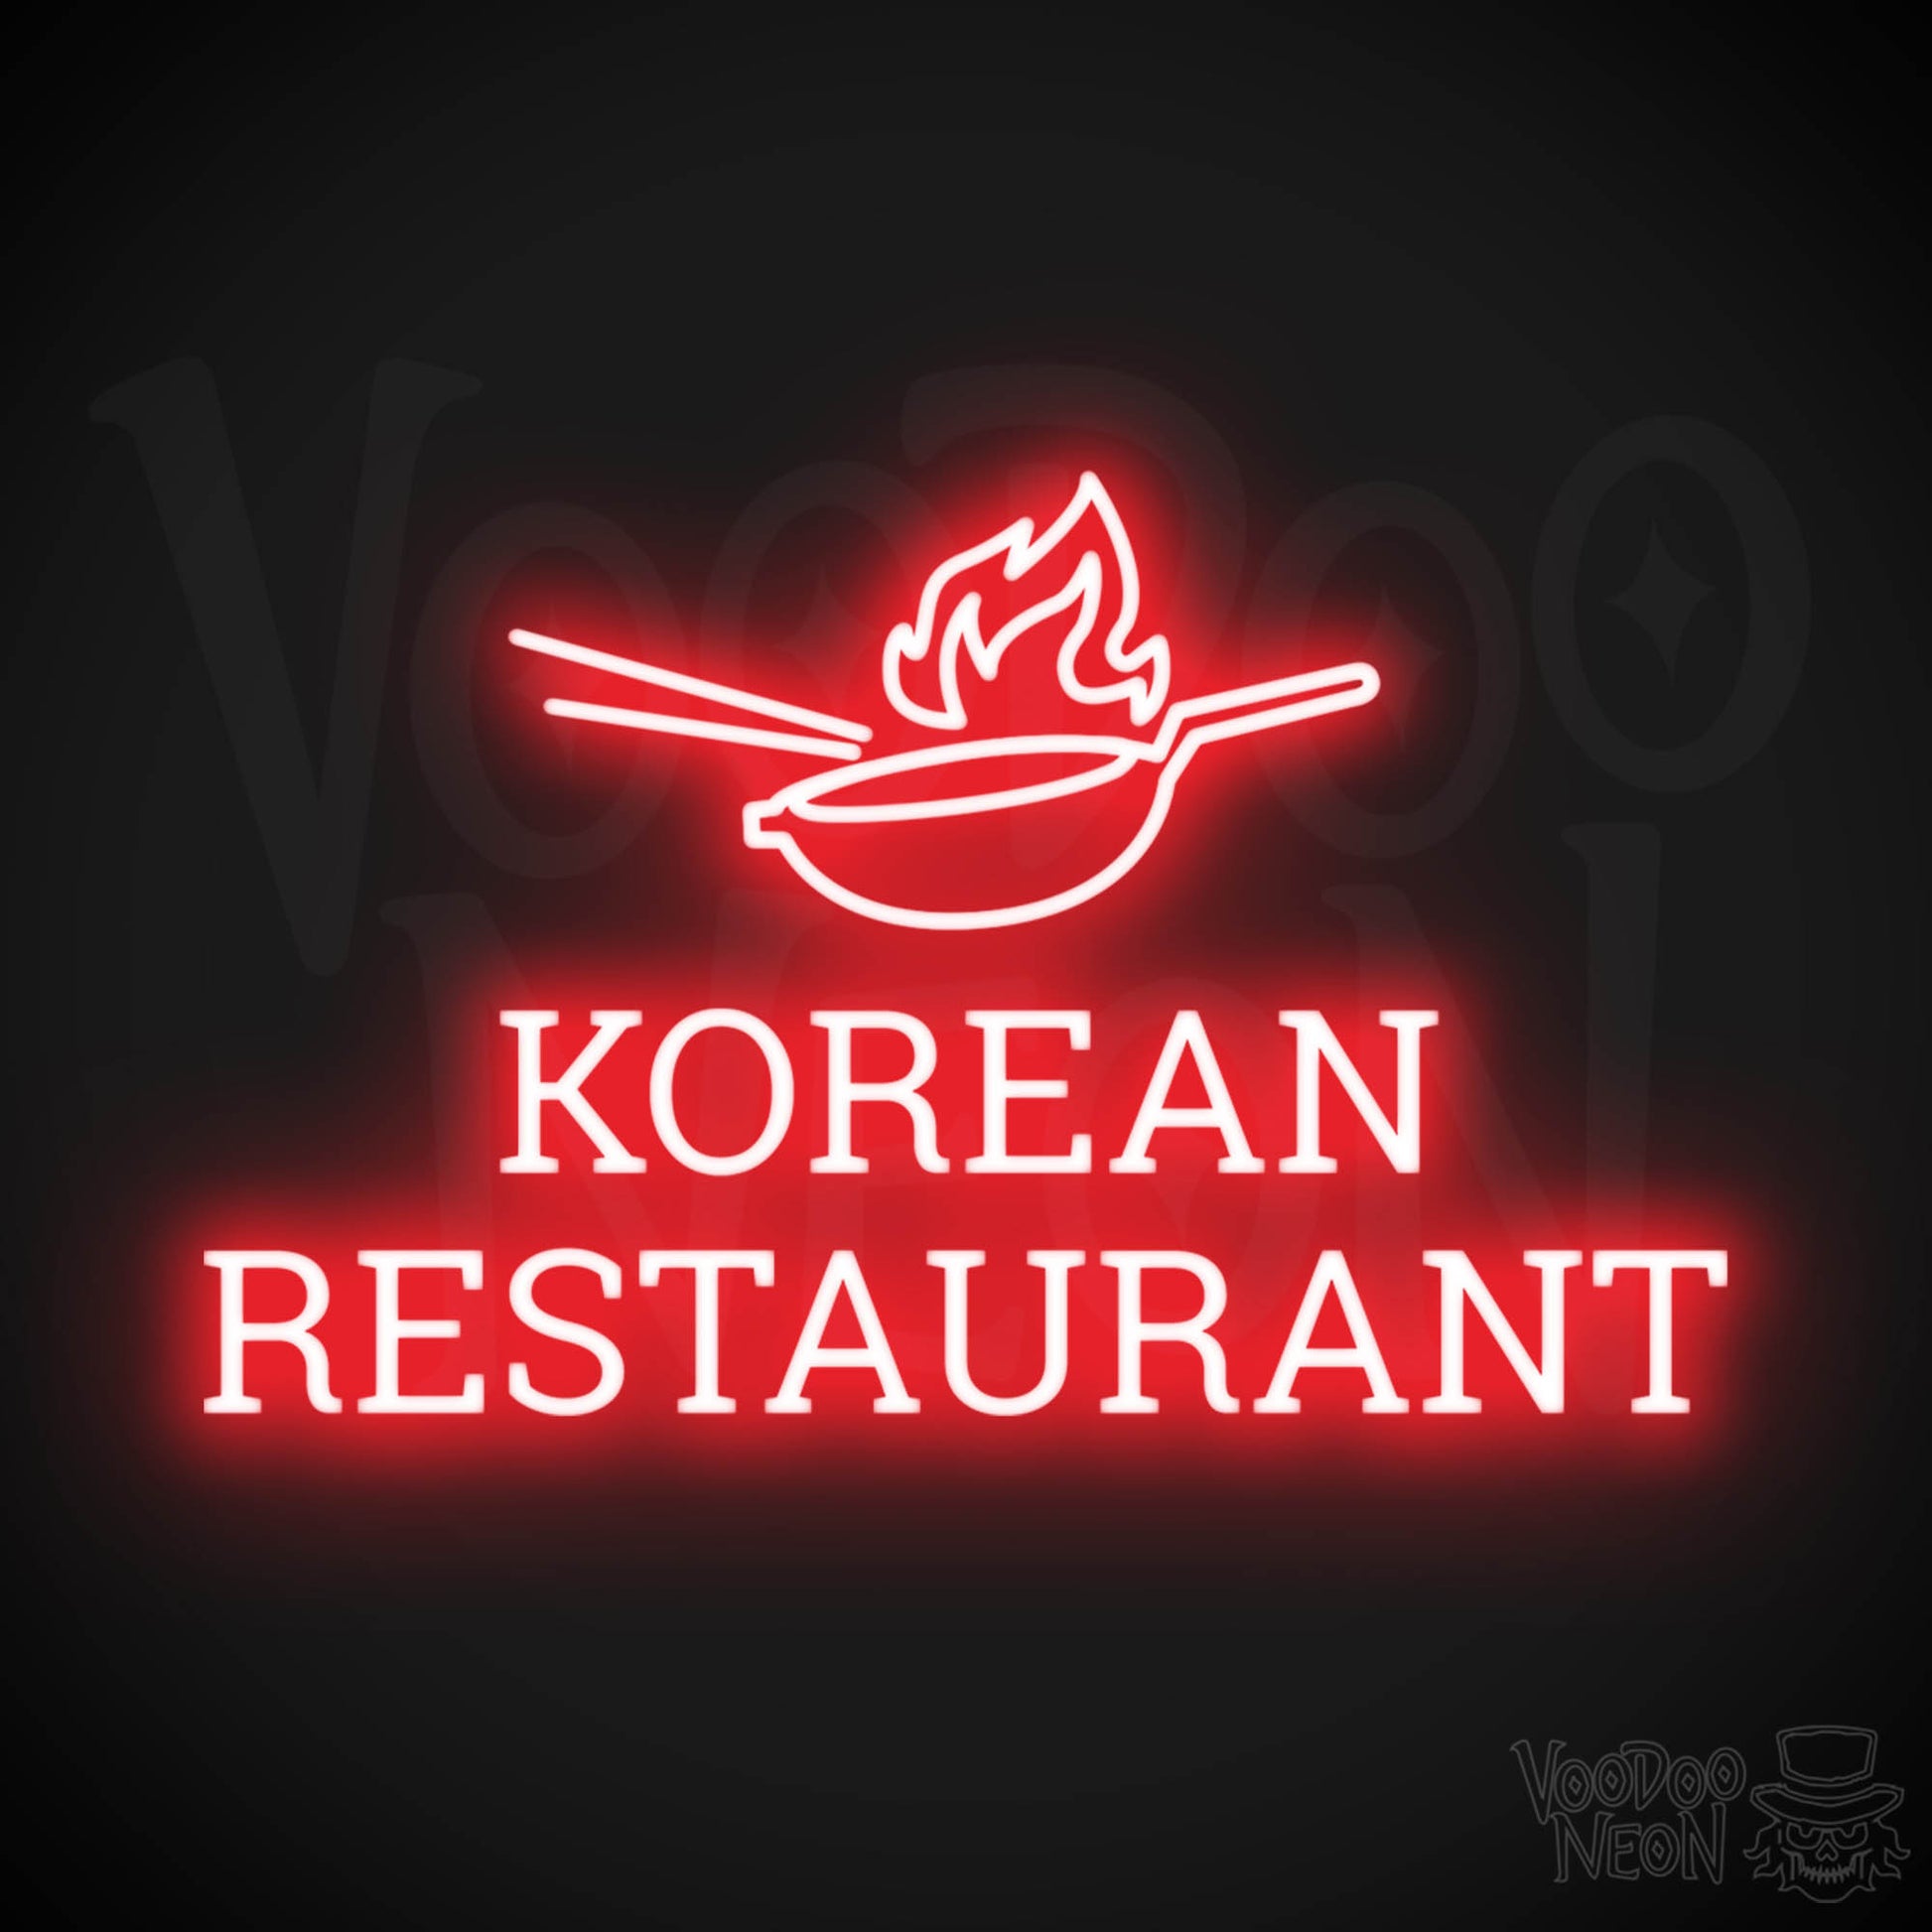 Korean Restaurant LED Neon - Red